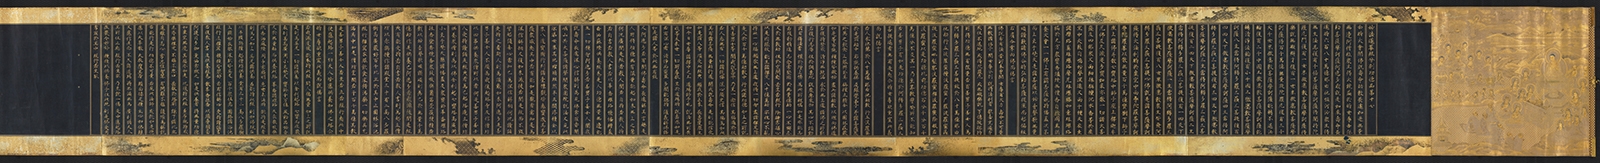 法华经图卷 银纸饰绢21.2×325